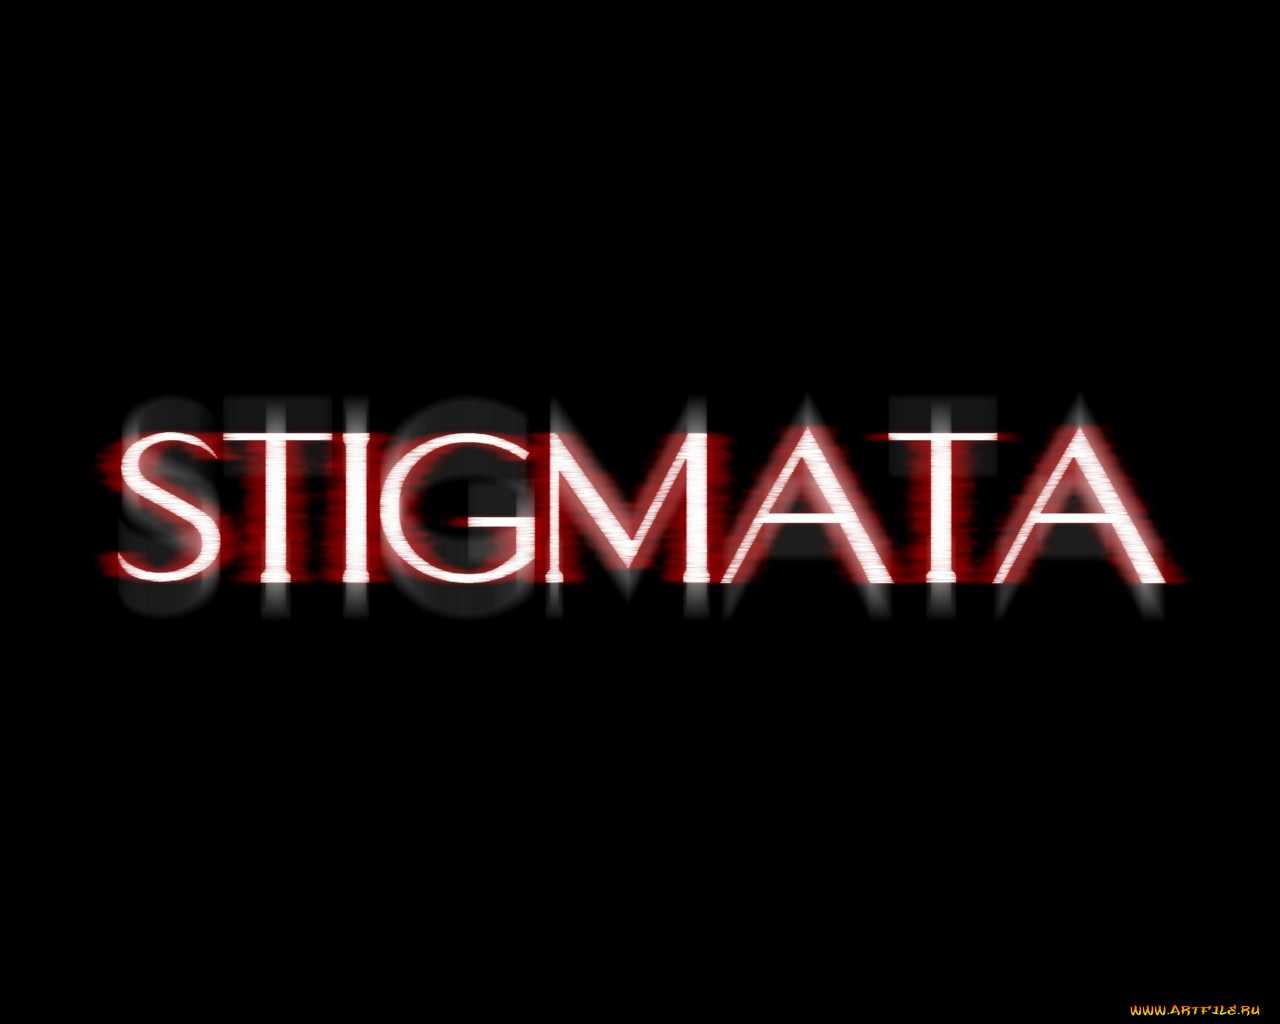 stigmata1, , stigmata